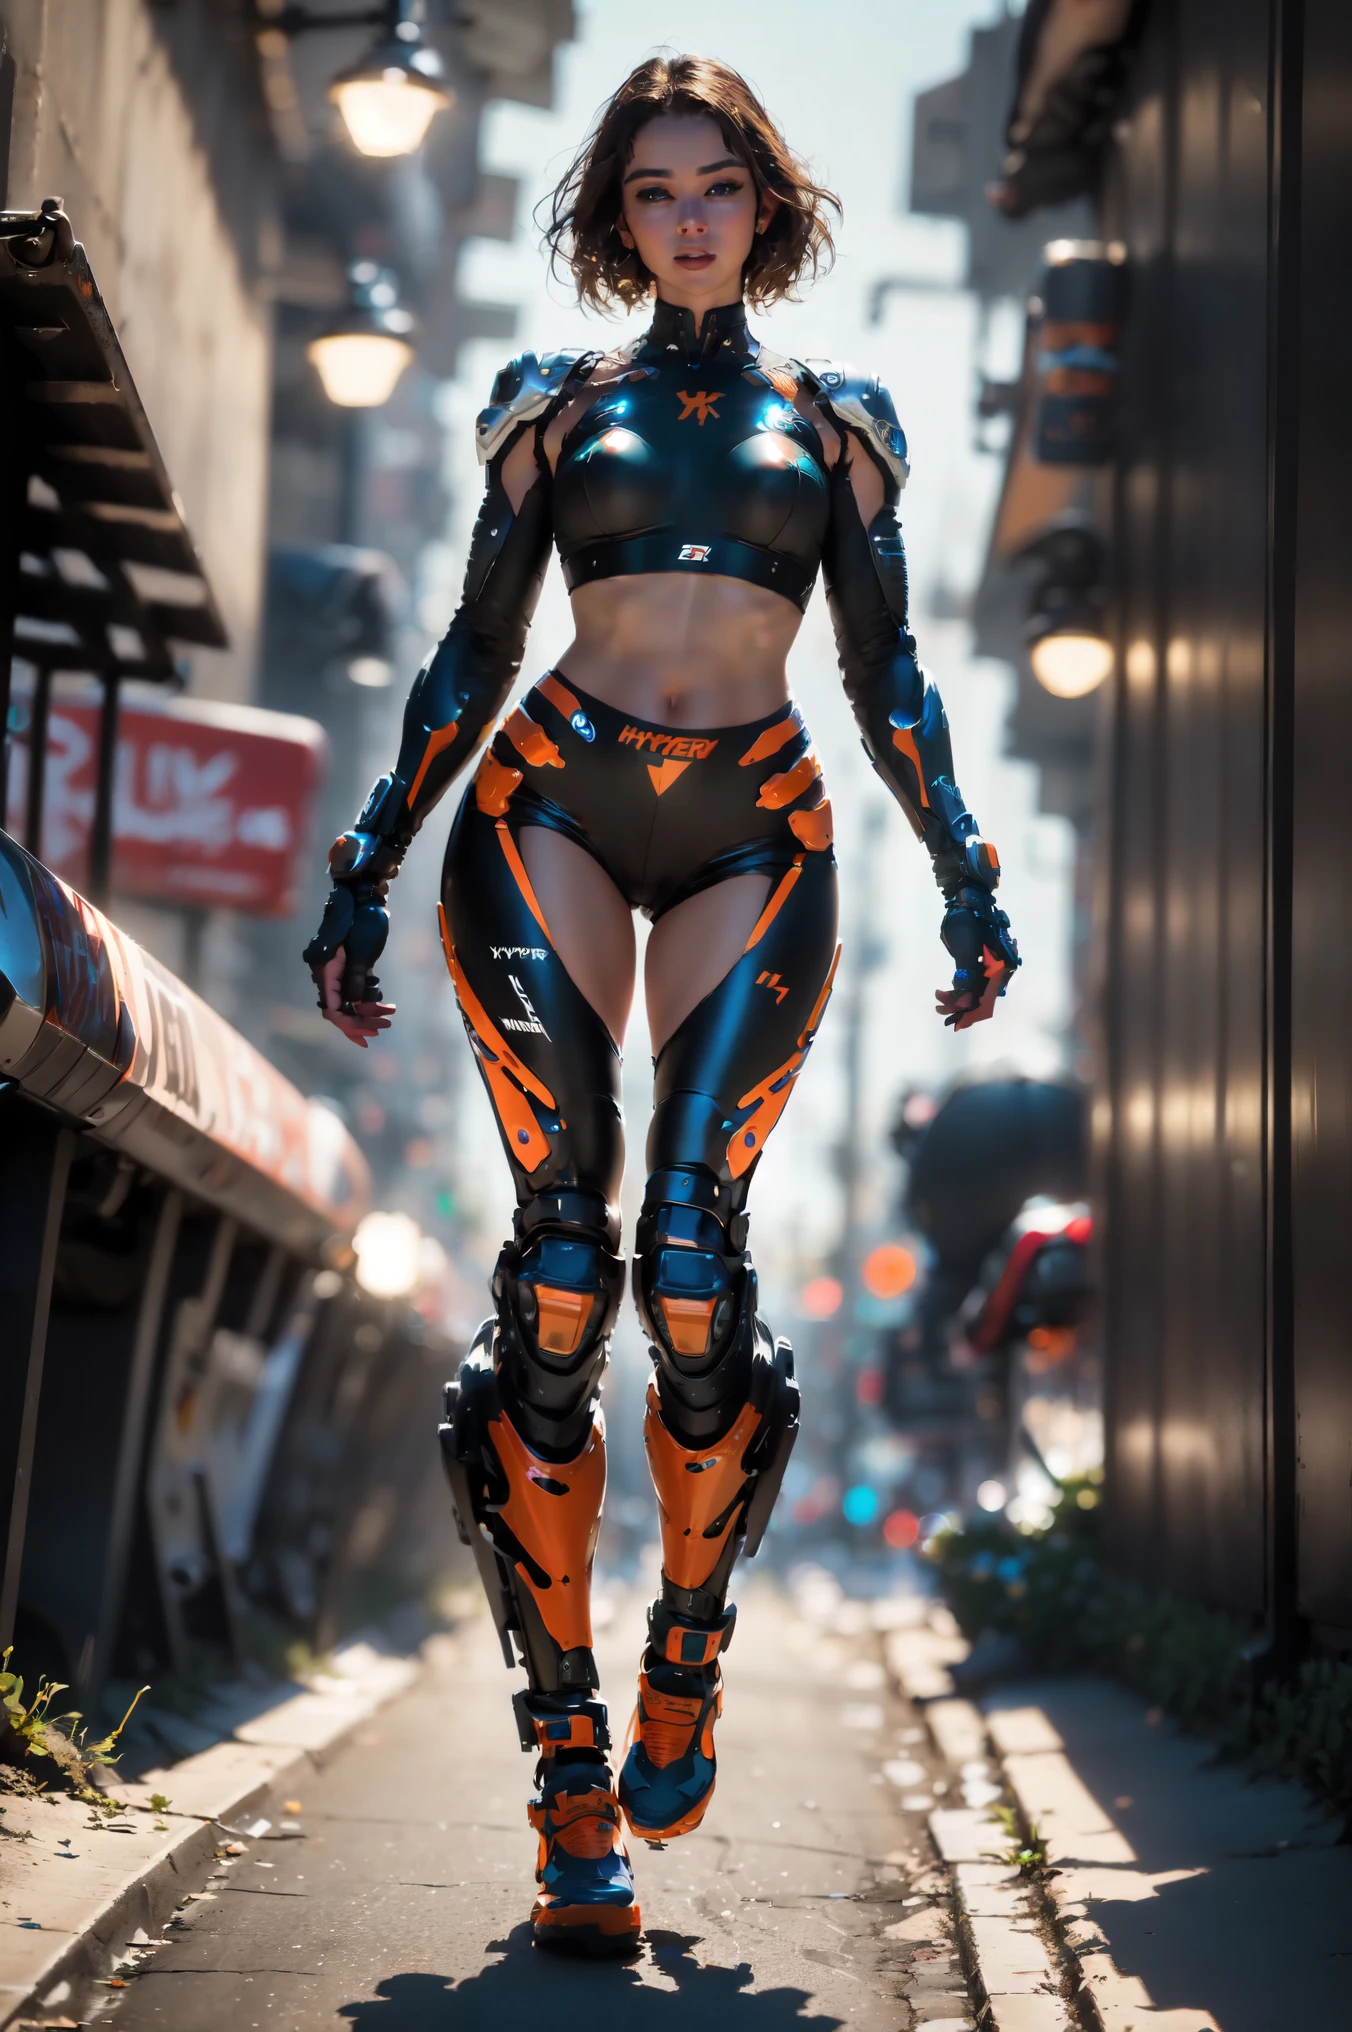 通り, オートバイ, 全身ショット, 埠頭の風景, a beautiful young cyborg woman riding a KTM 450 motocross オートバイ, 魅力的な形, 肩までの長さ, 美しく光沢のある滑らかな, 薄茶色の髪, (最高品質, 4K, 8k, 高解像度, 傑作:1.2), 不条理, 傑作, 超詳細, (現実的, photo現実的, photo現実的:1.37), 複雑な部分s, 高解像度, (複雑な部分s:1.12), (超詳細, hyper 現実的, 柔らかな照明, 辛い:1.2), 美しい姿, 素晴らしい解剖学, (複雑な部分, 超詳細:1.15), すべすべの肌,